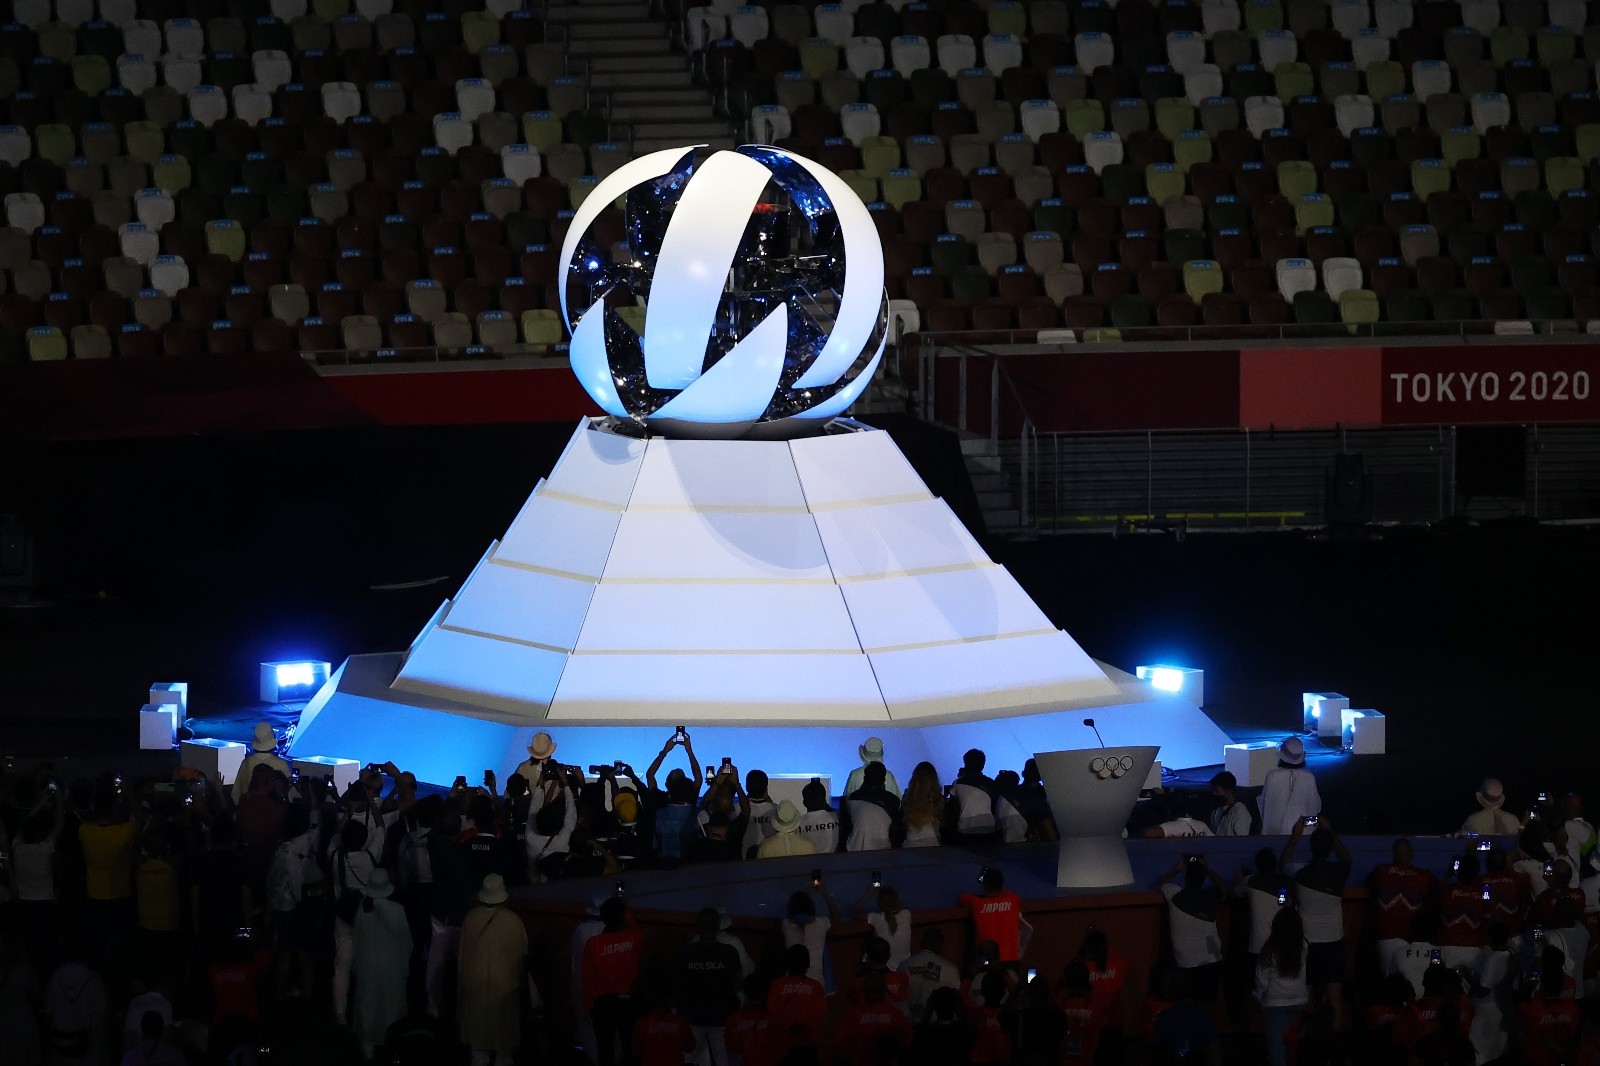 Tokyo Olimpiyat Oyunları kapanış seremonisi ile sona erdi